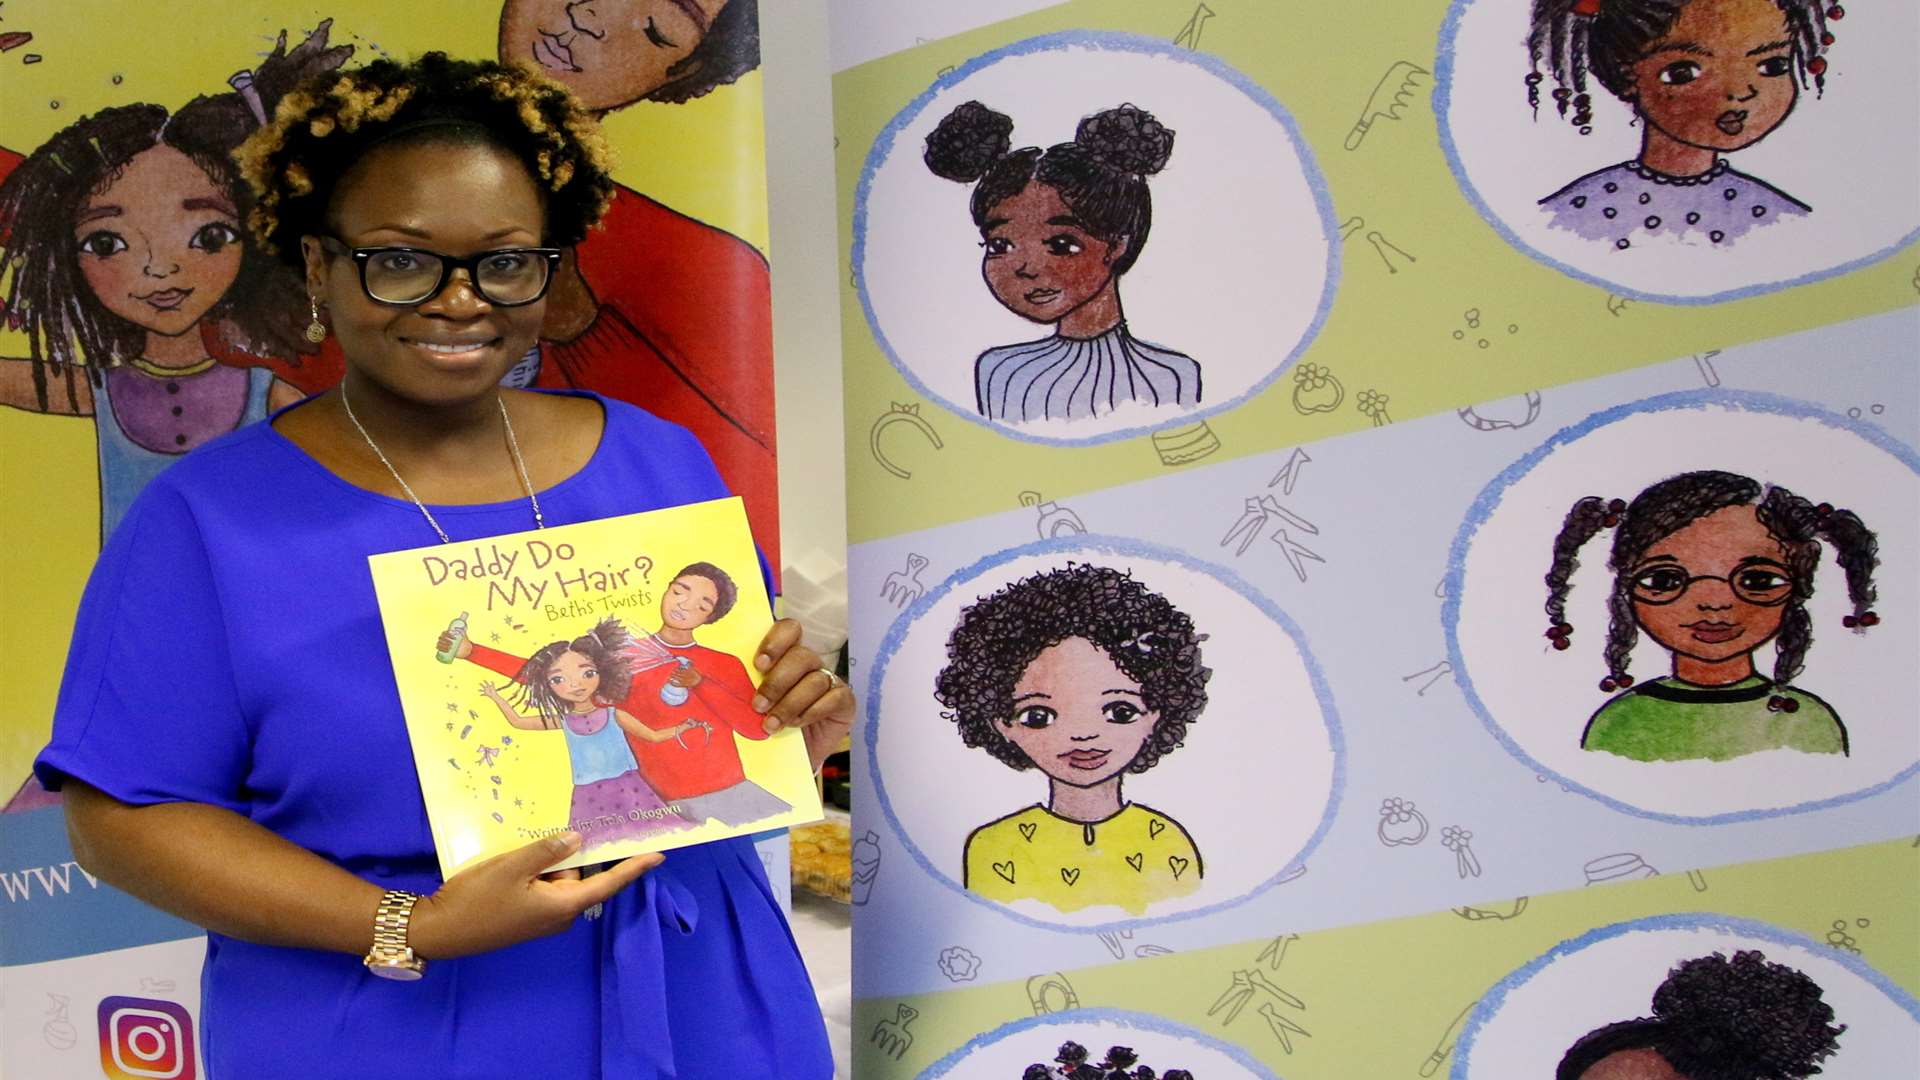 Tola Okogwu has written her first children's book - Daddy Do My Hair